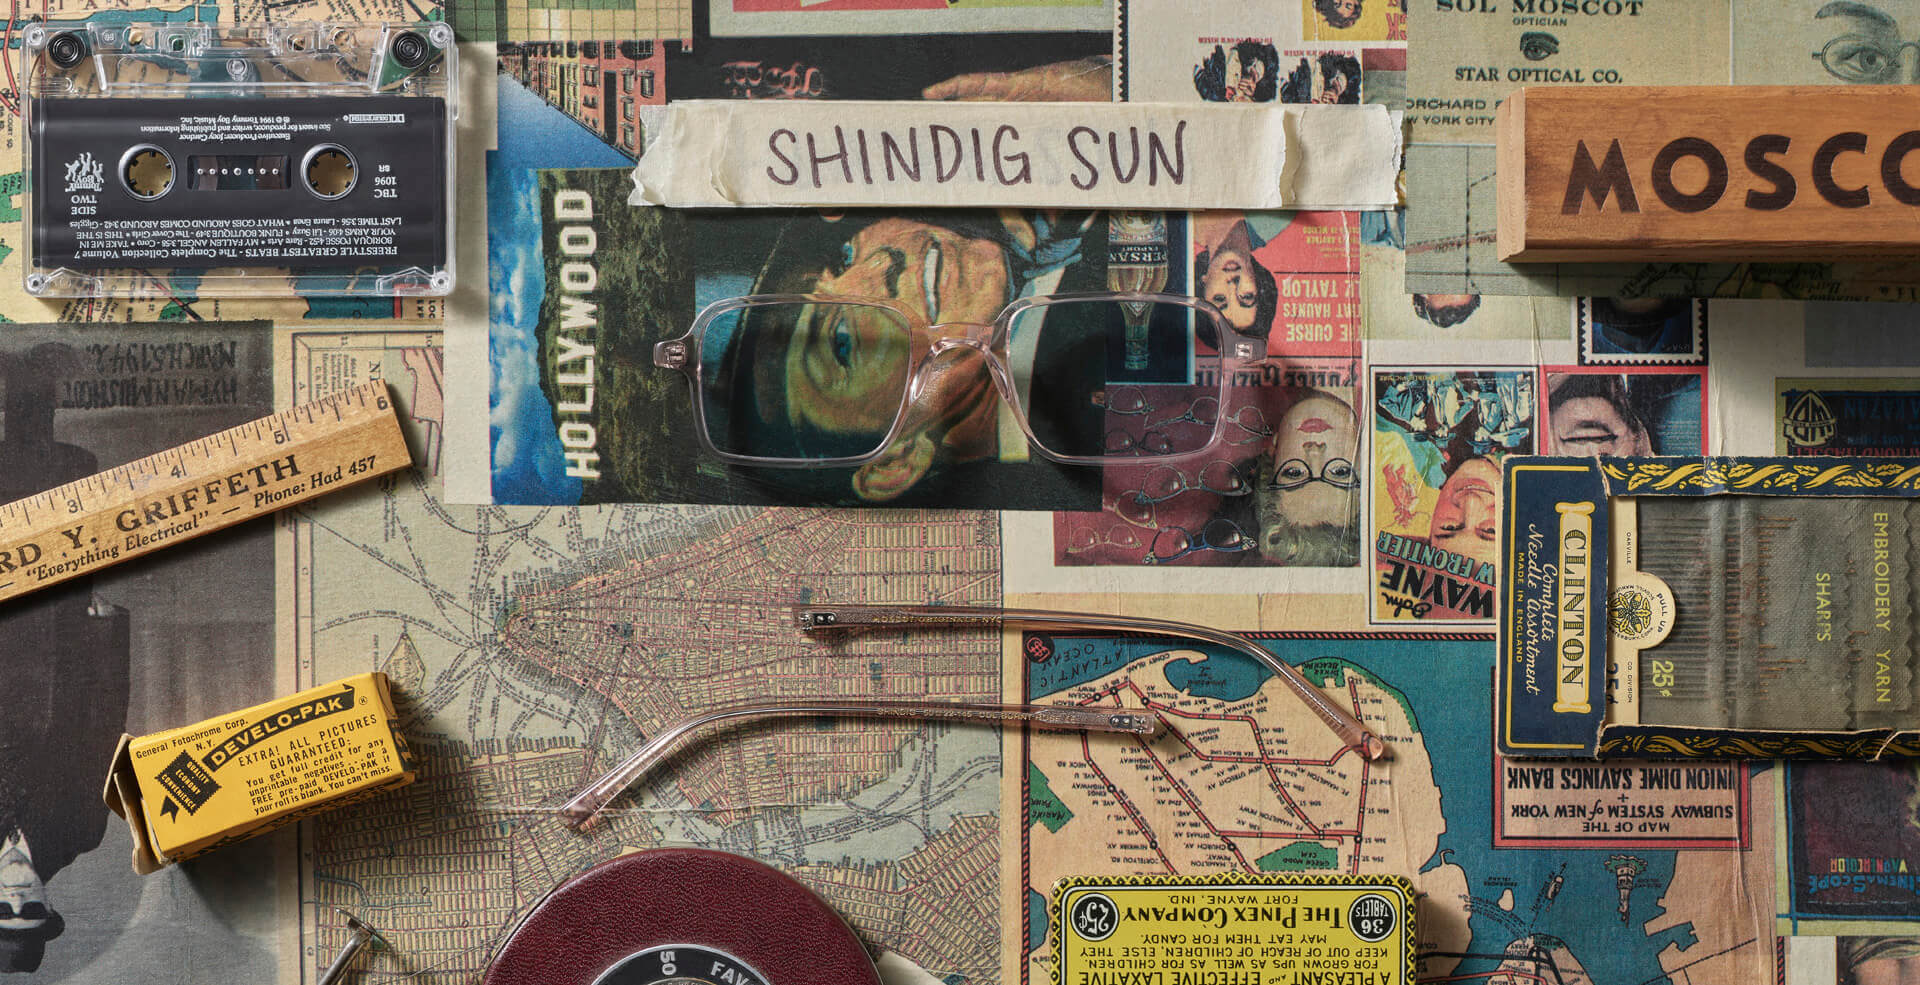 The SHINDIG SUN